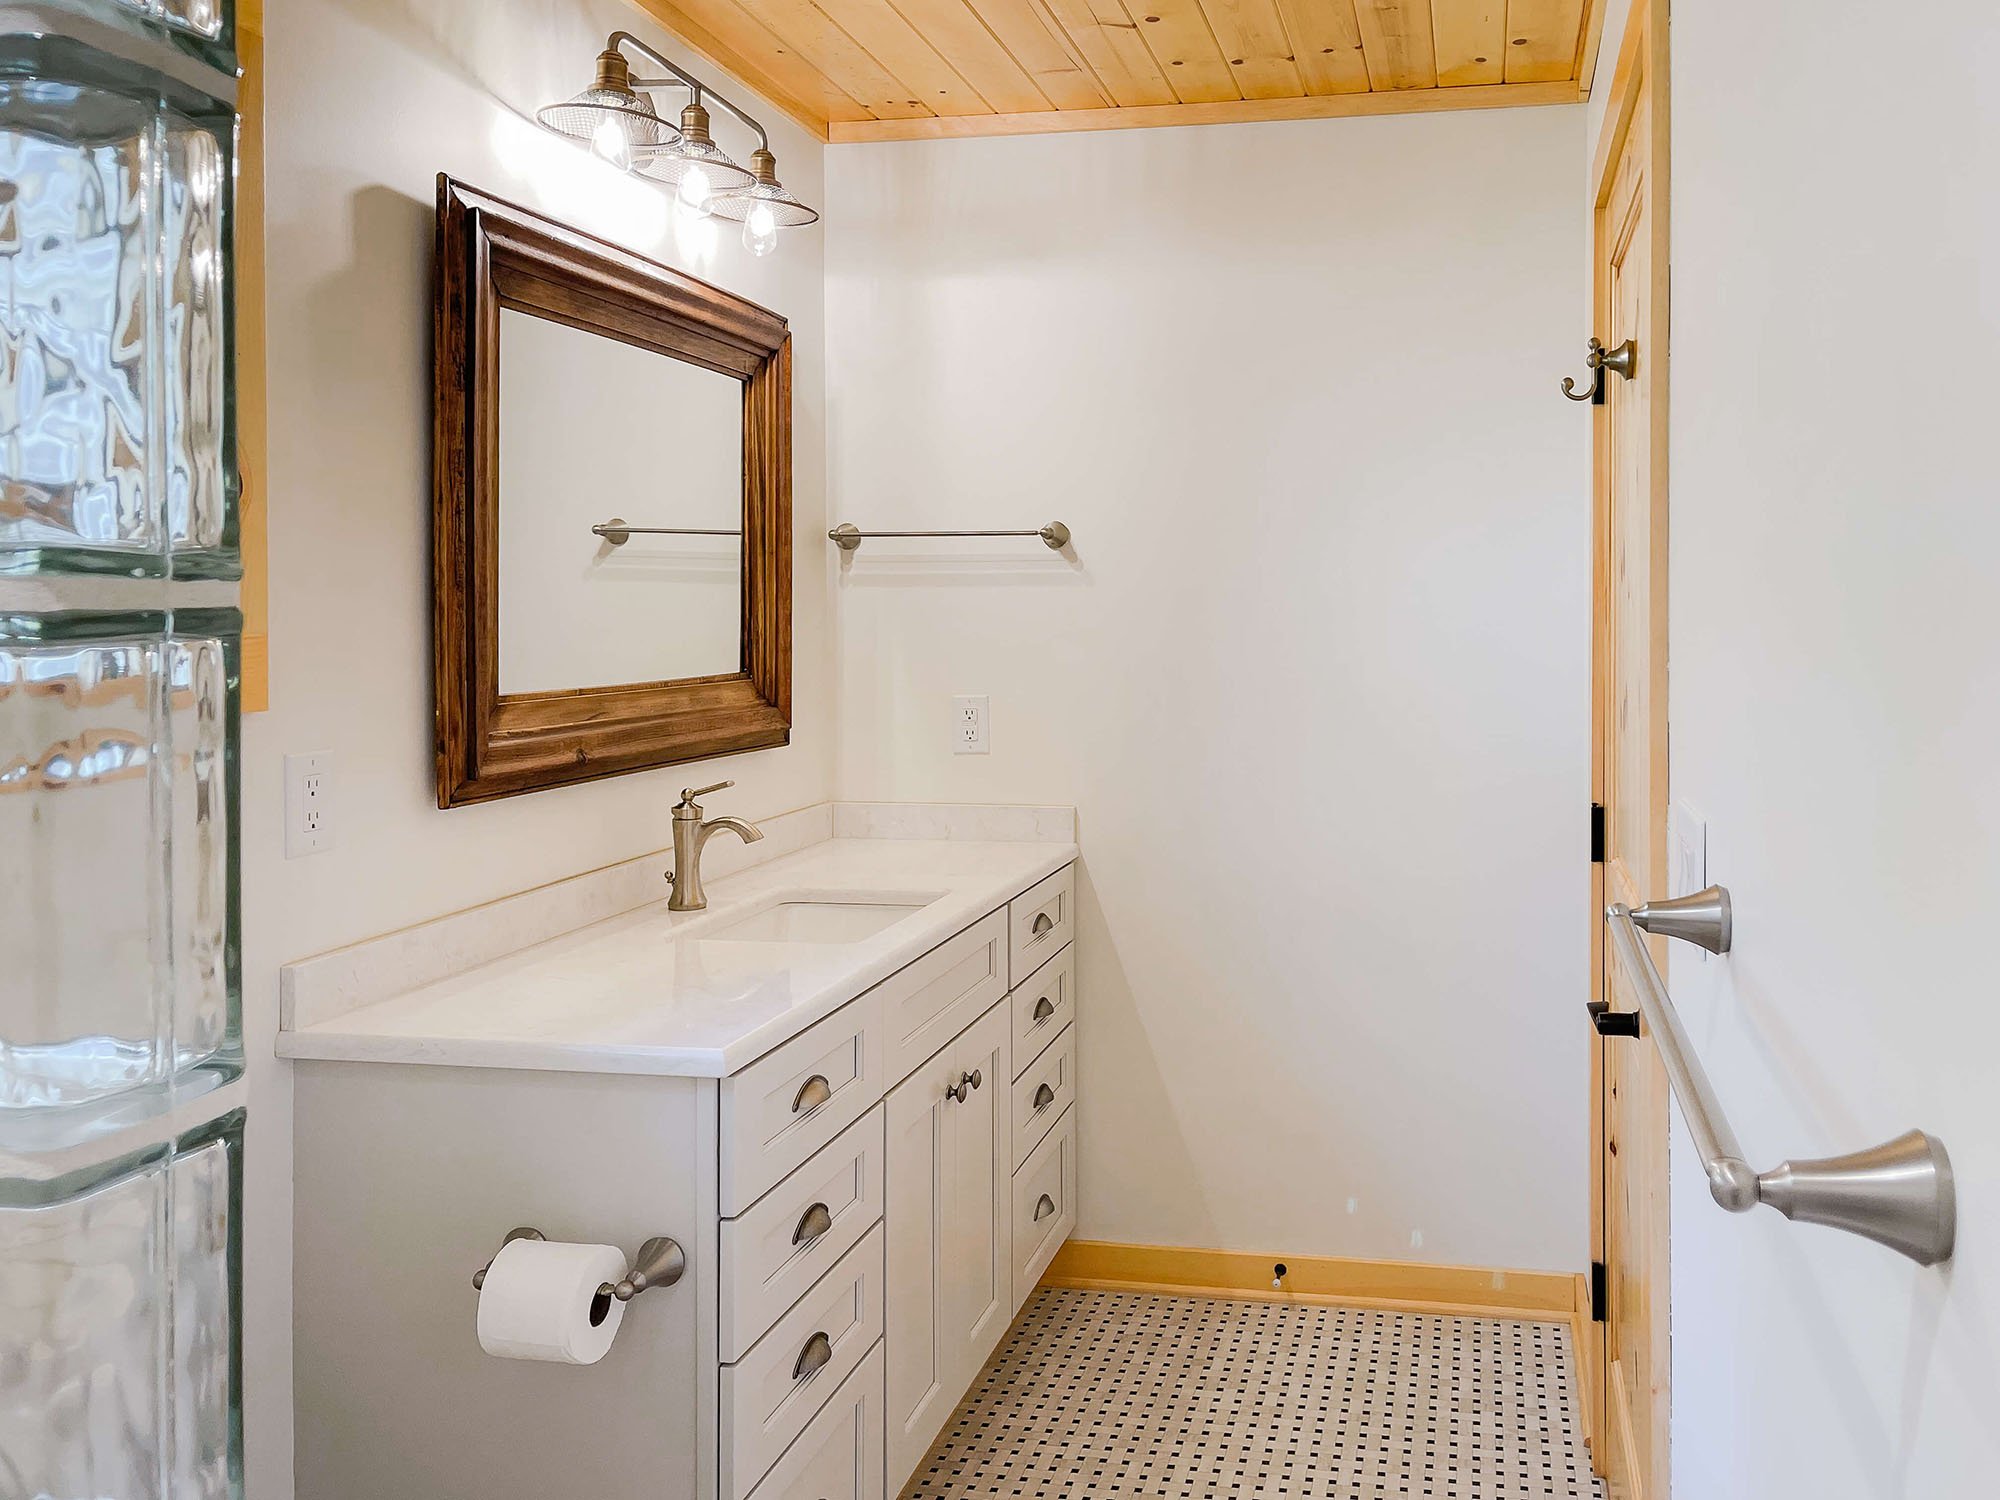 bathroom-remodel-wood-plank-ceiling-1